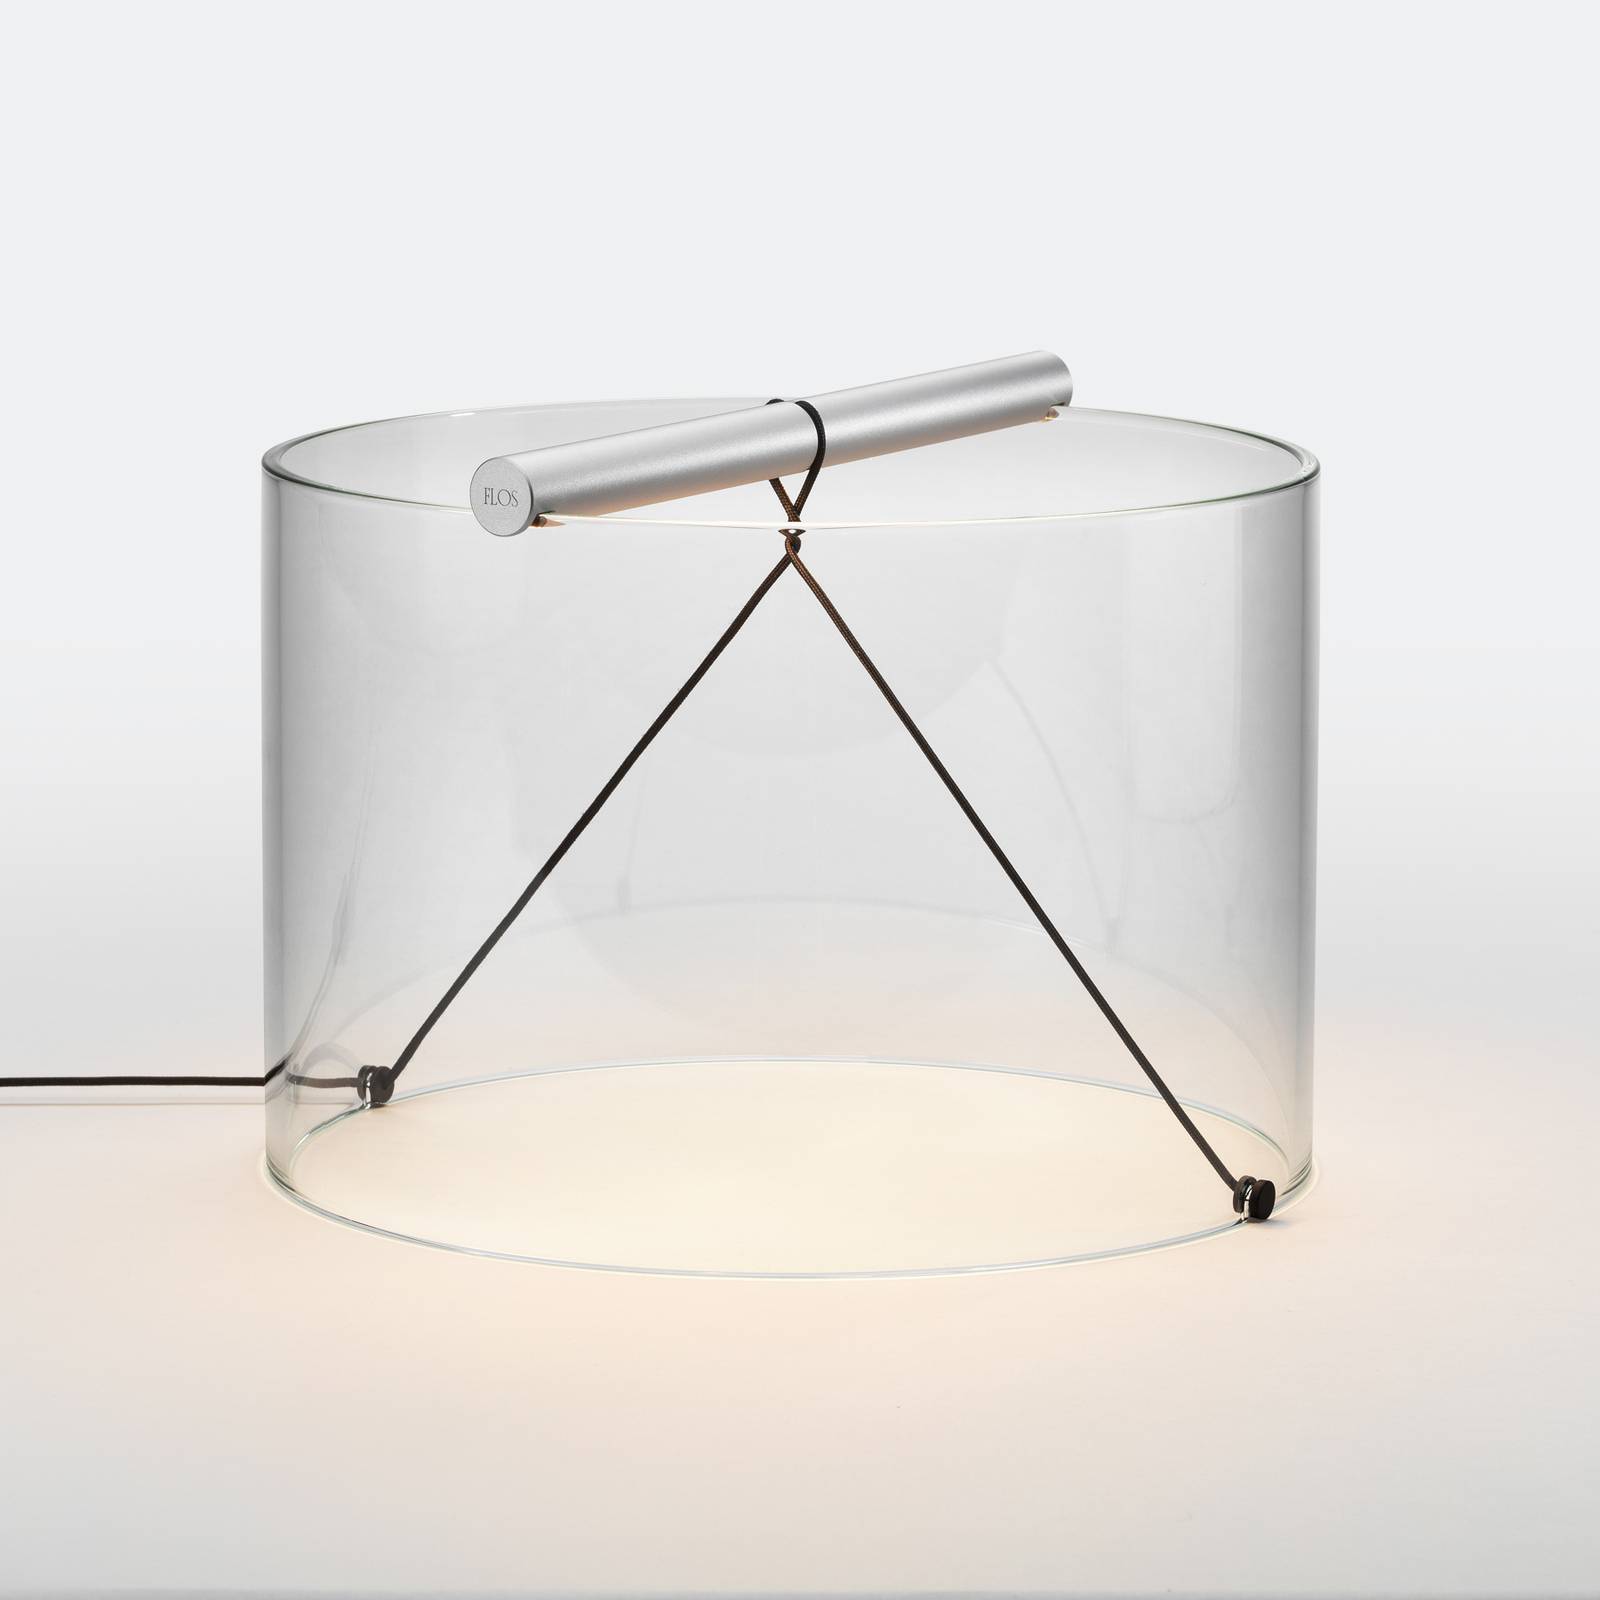 Flos to-tie t3 led asztali lámpa, alumínium